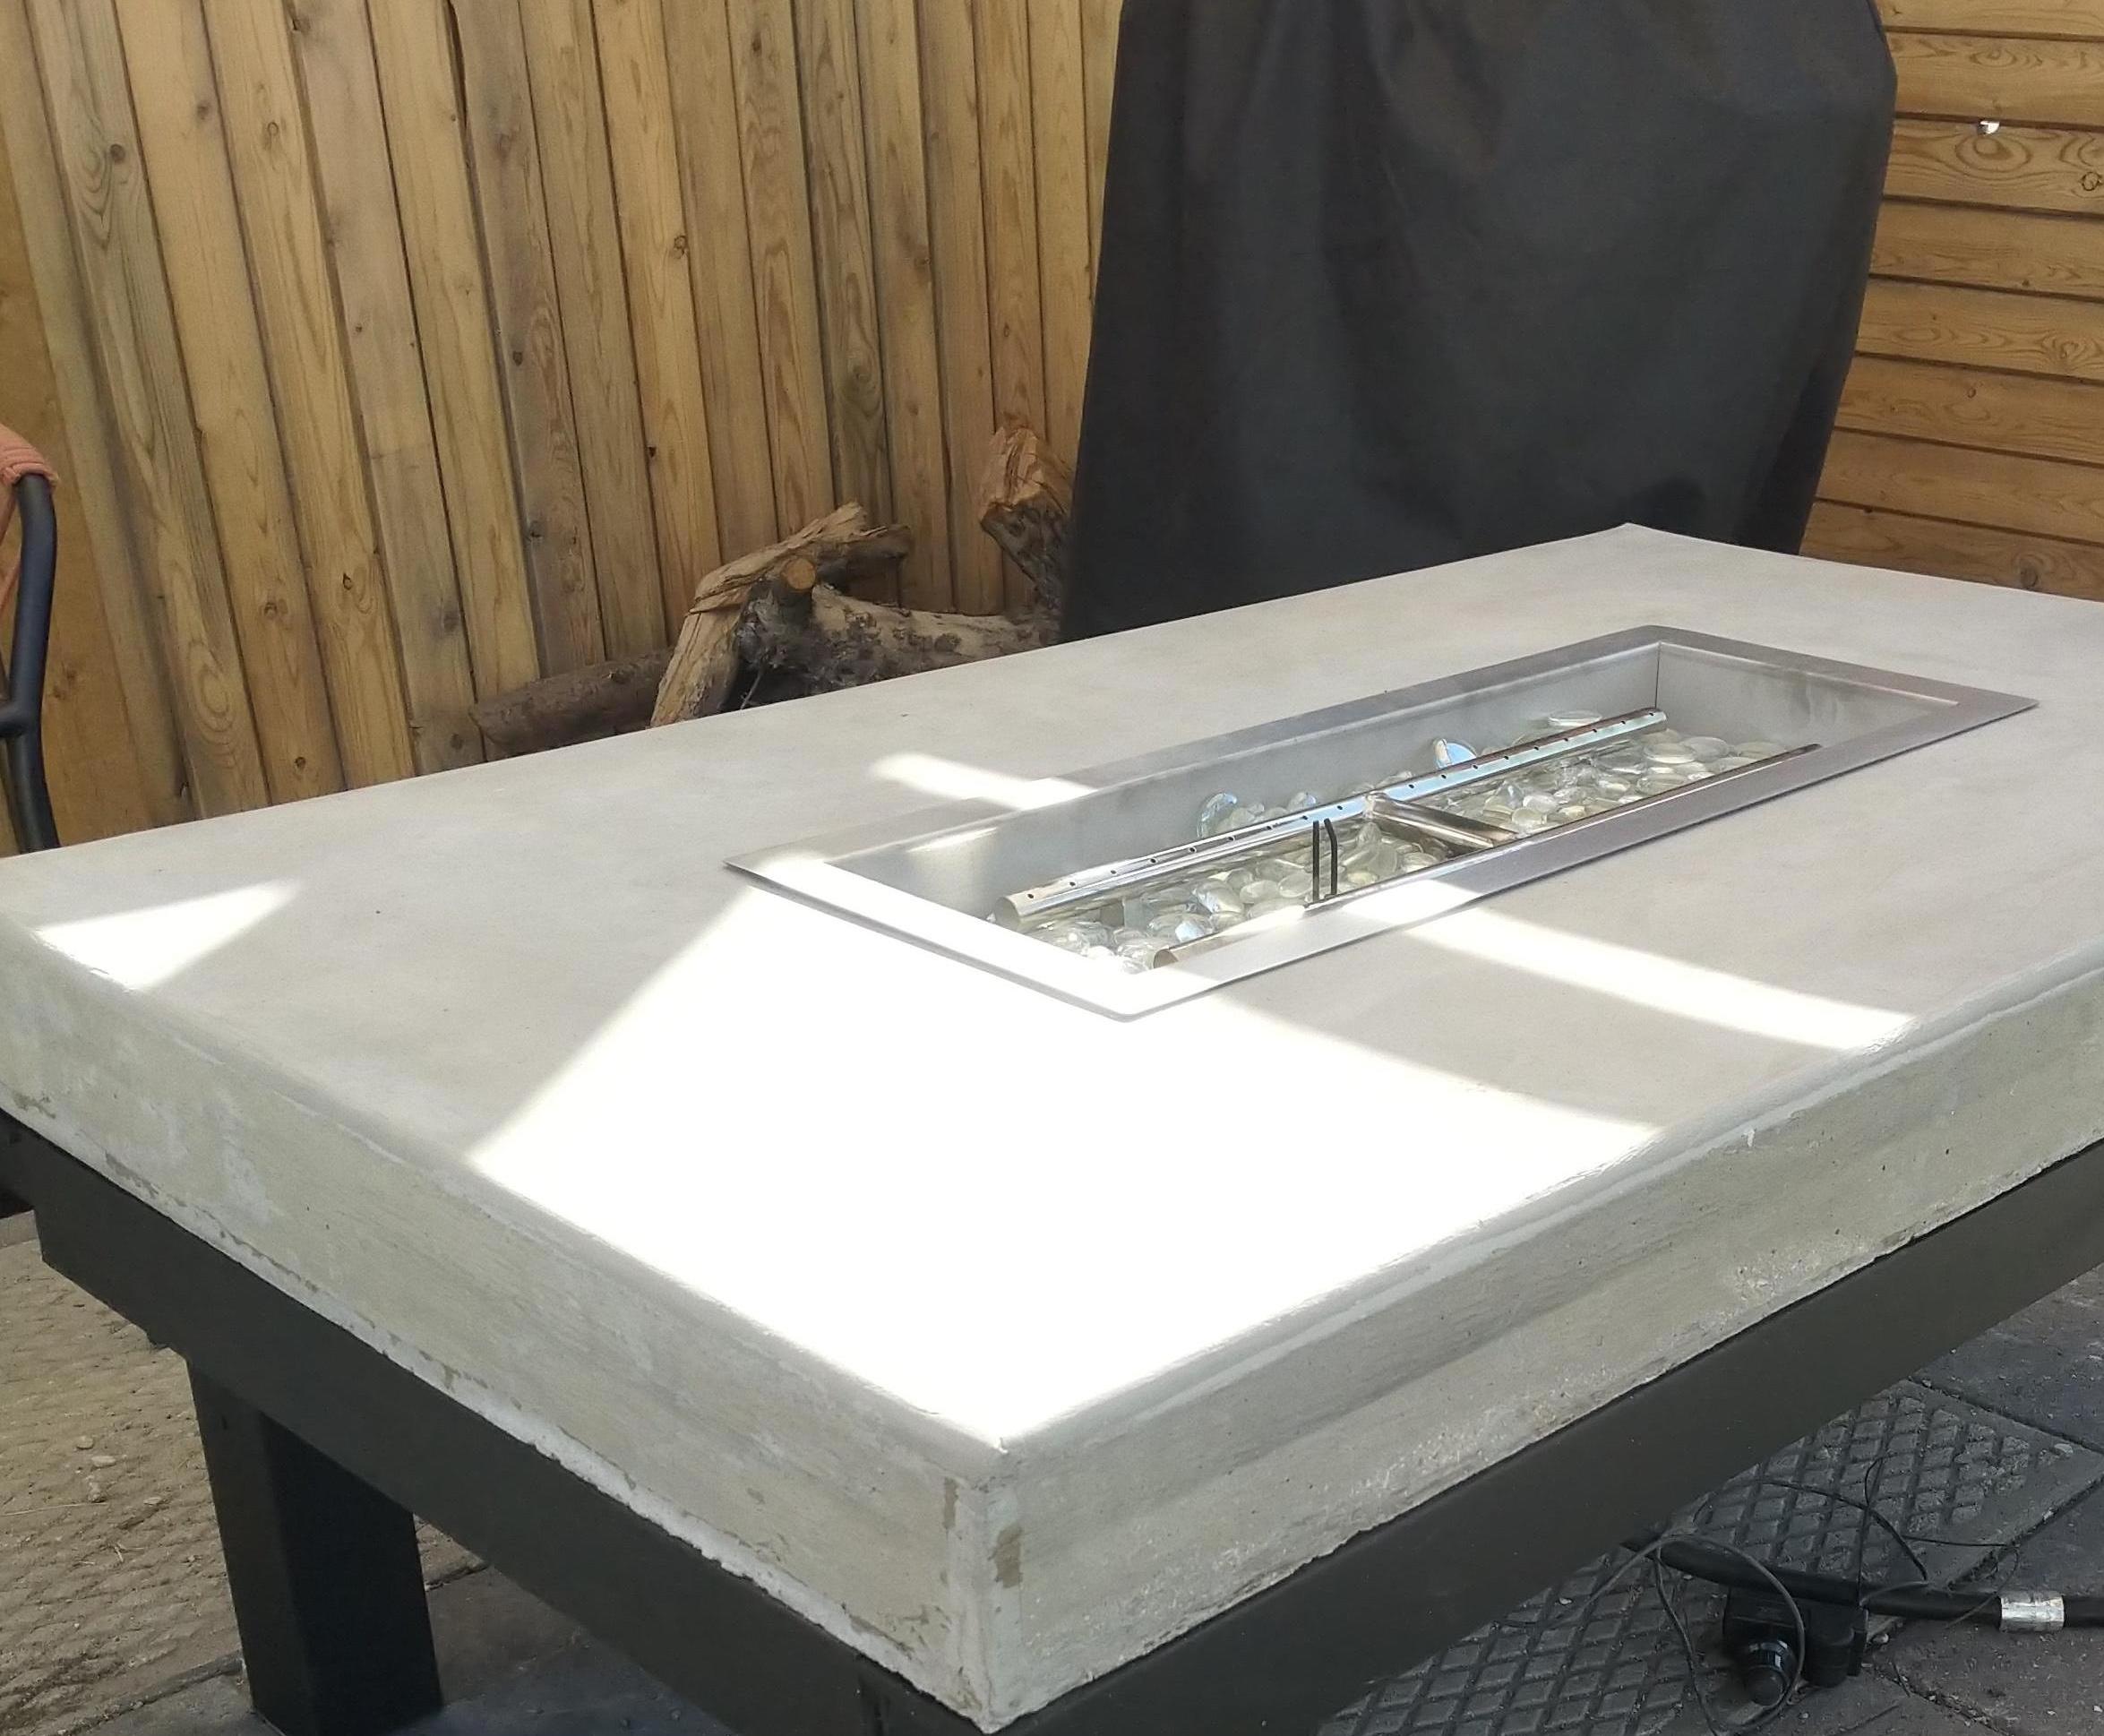 Repurposed Metal Fire Table